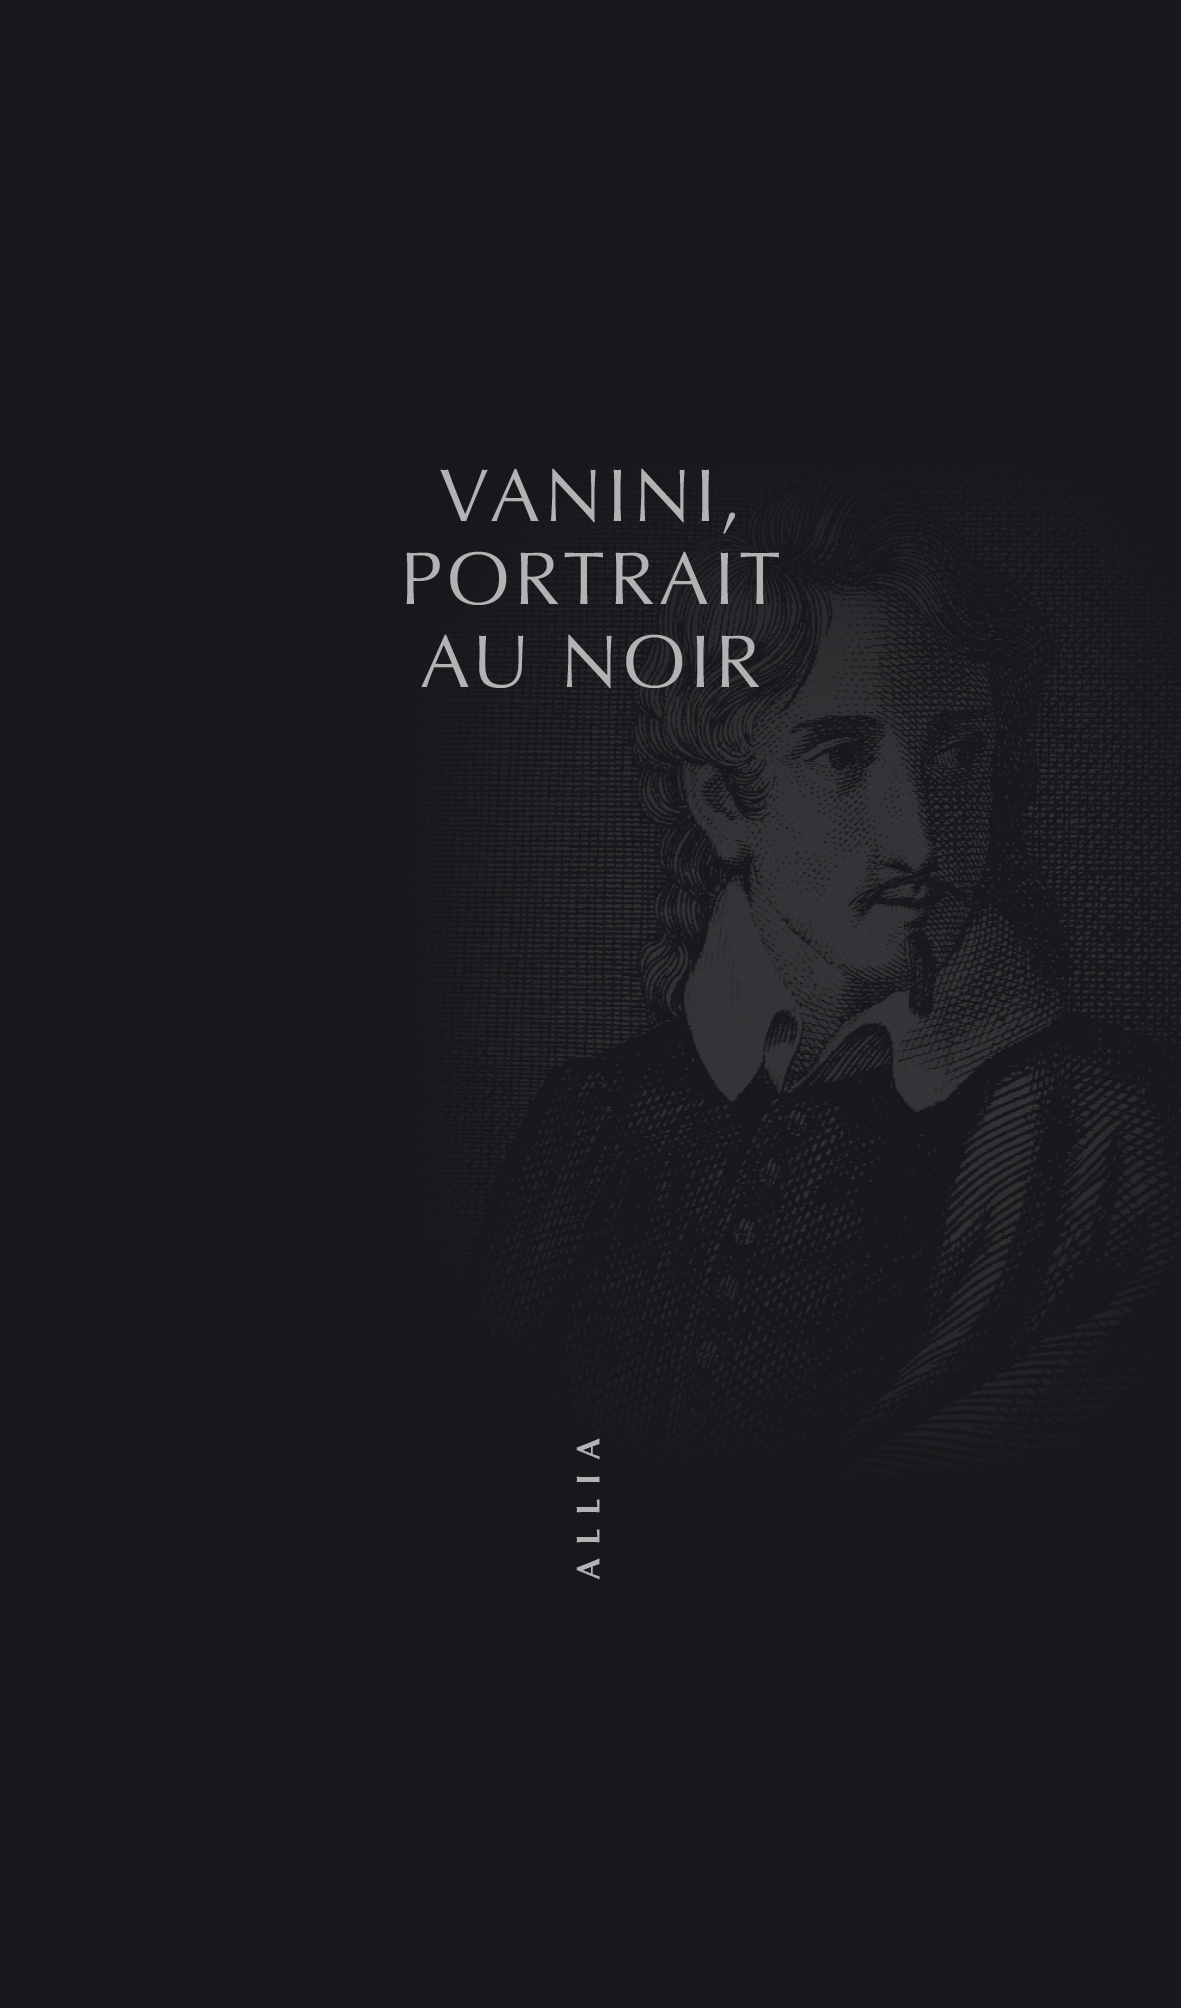 Vanini, portrait au noir